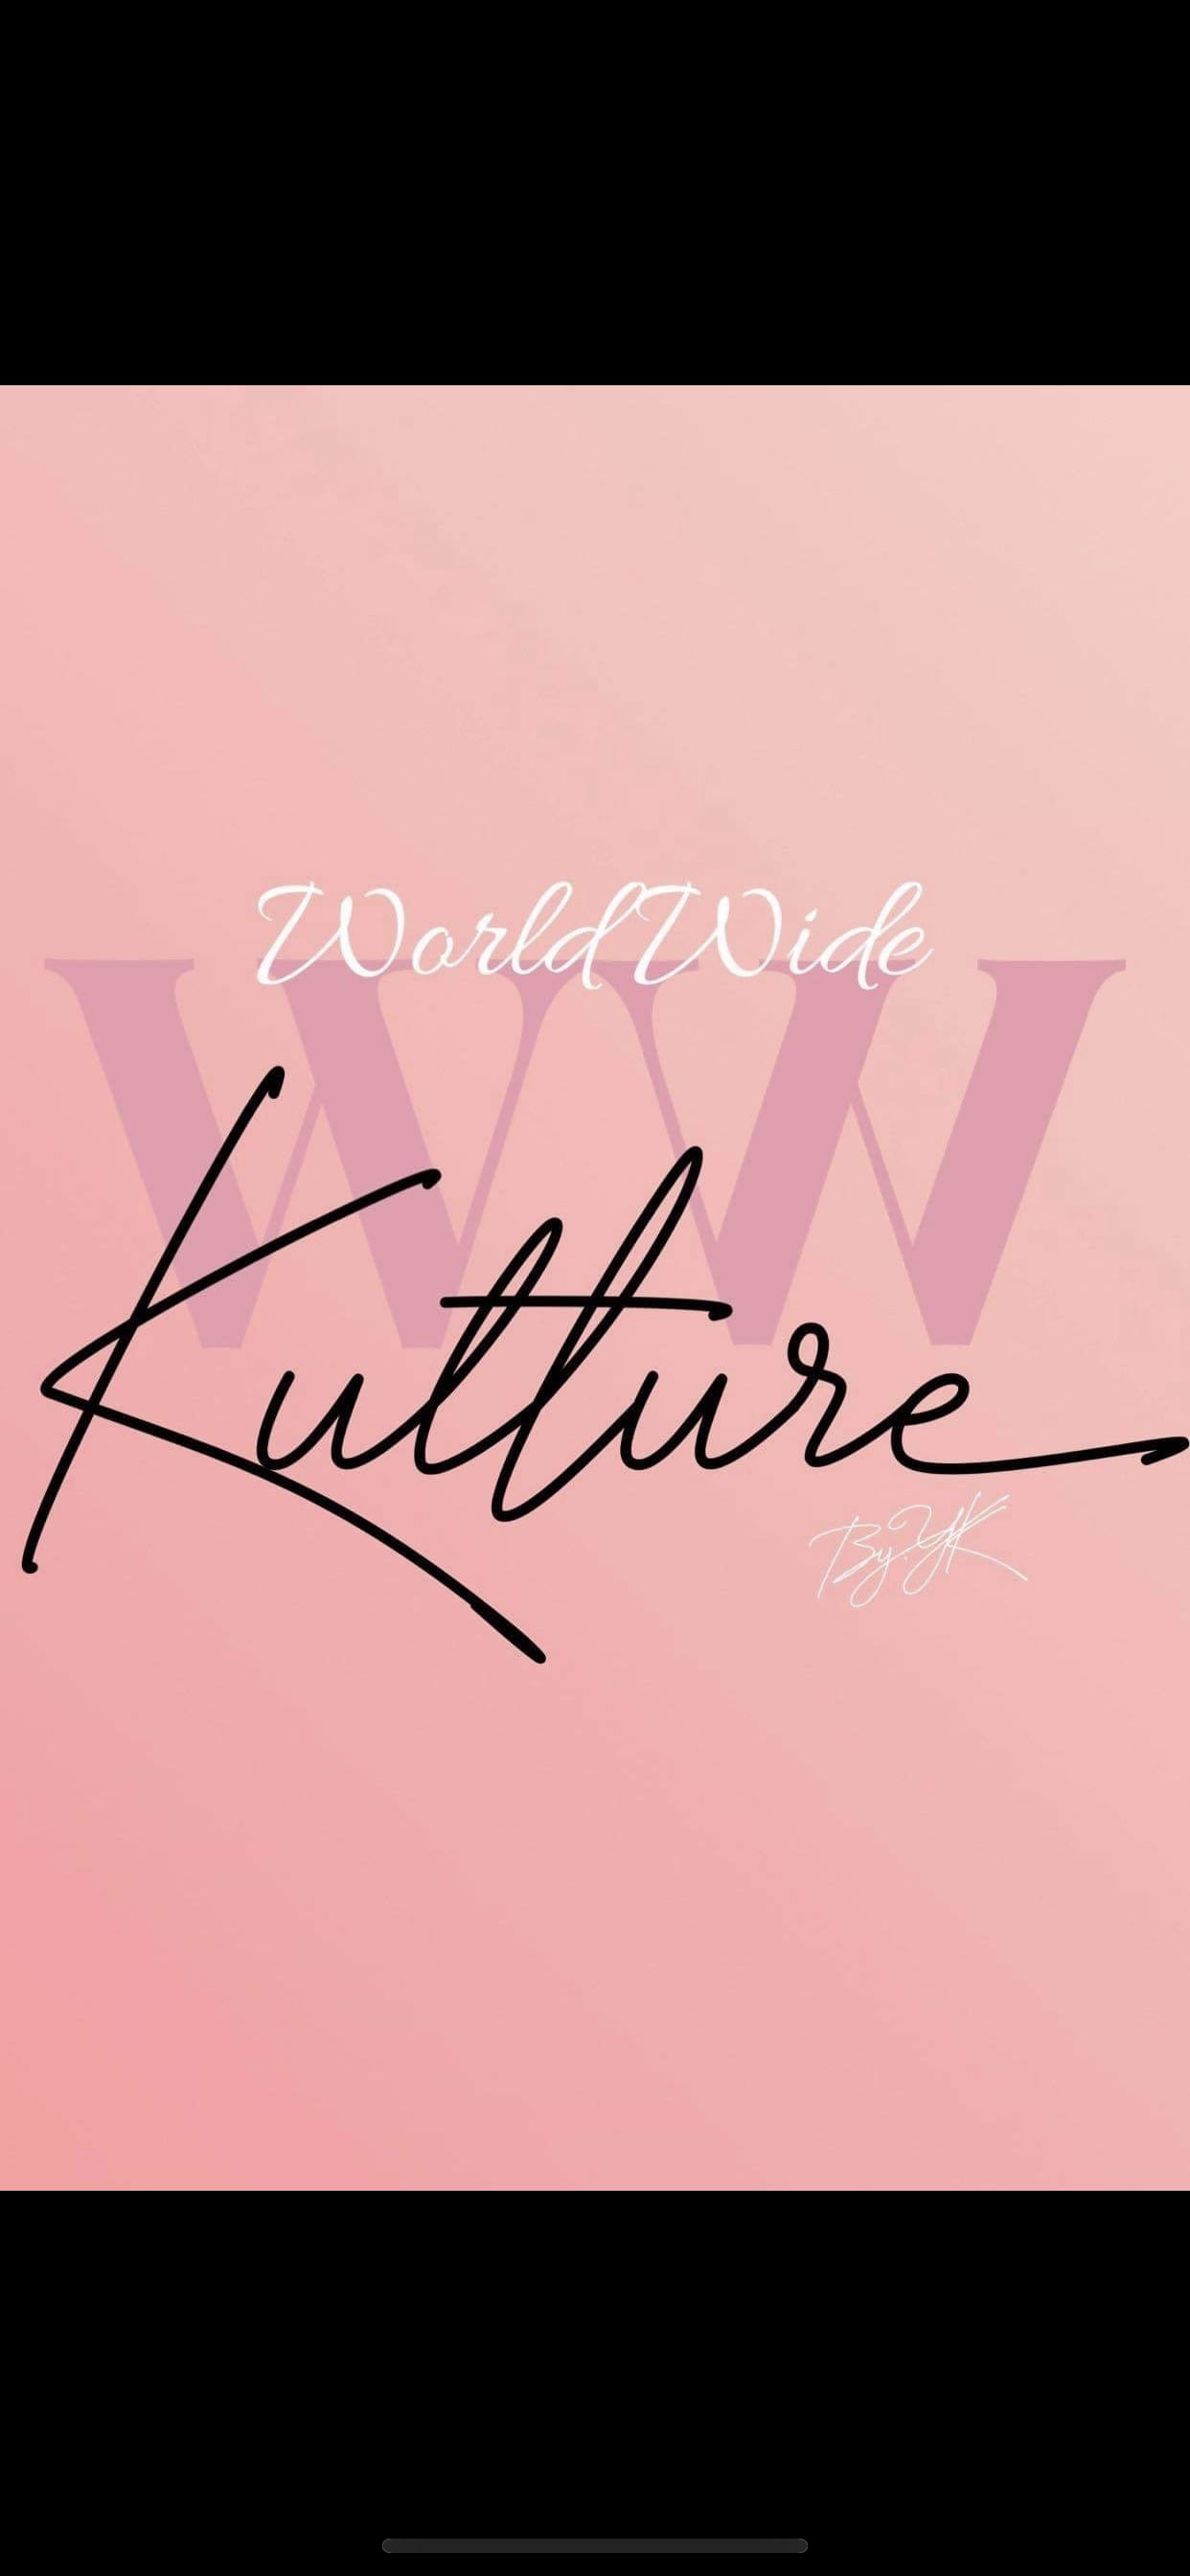 Worldwide Kulture